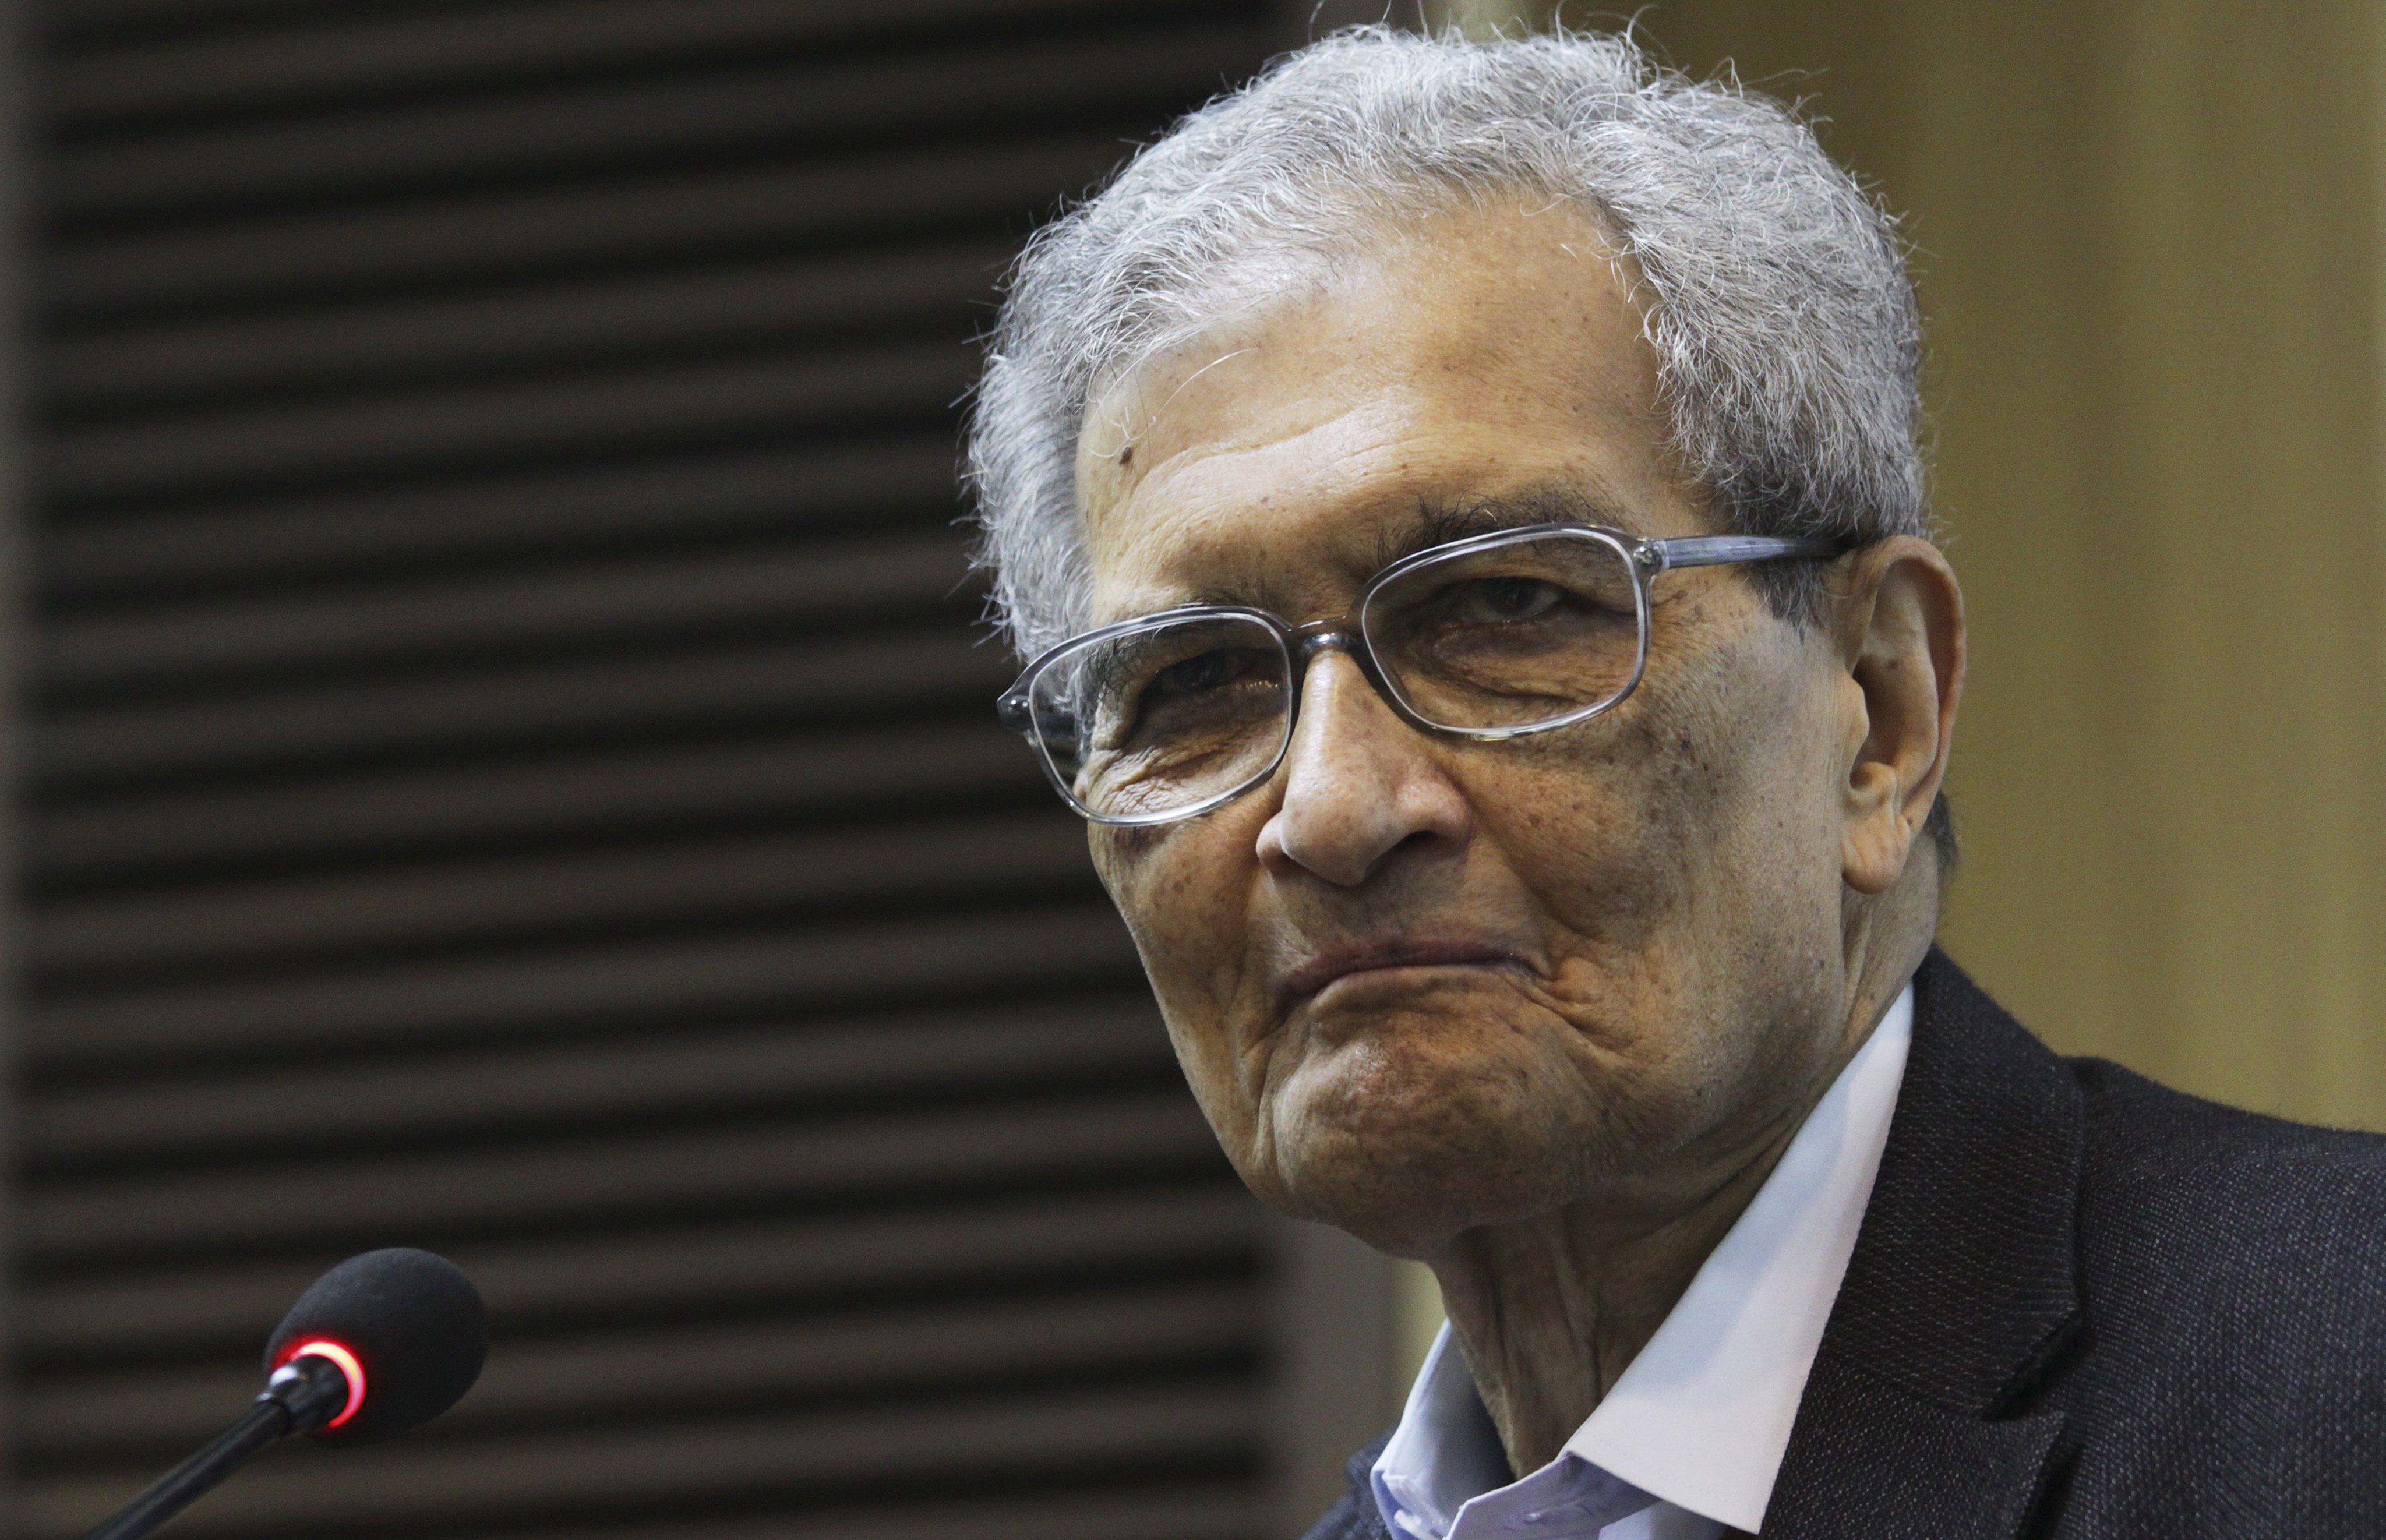 El premio Nobel de Economía Amartya Sen. EFE/Anindito Mukherjee/Archivo
